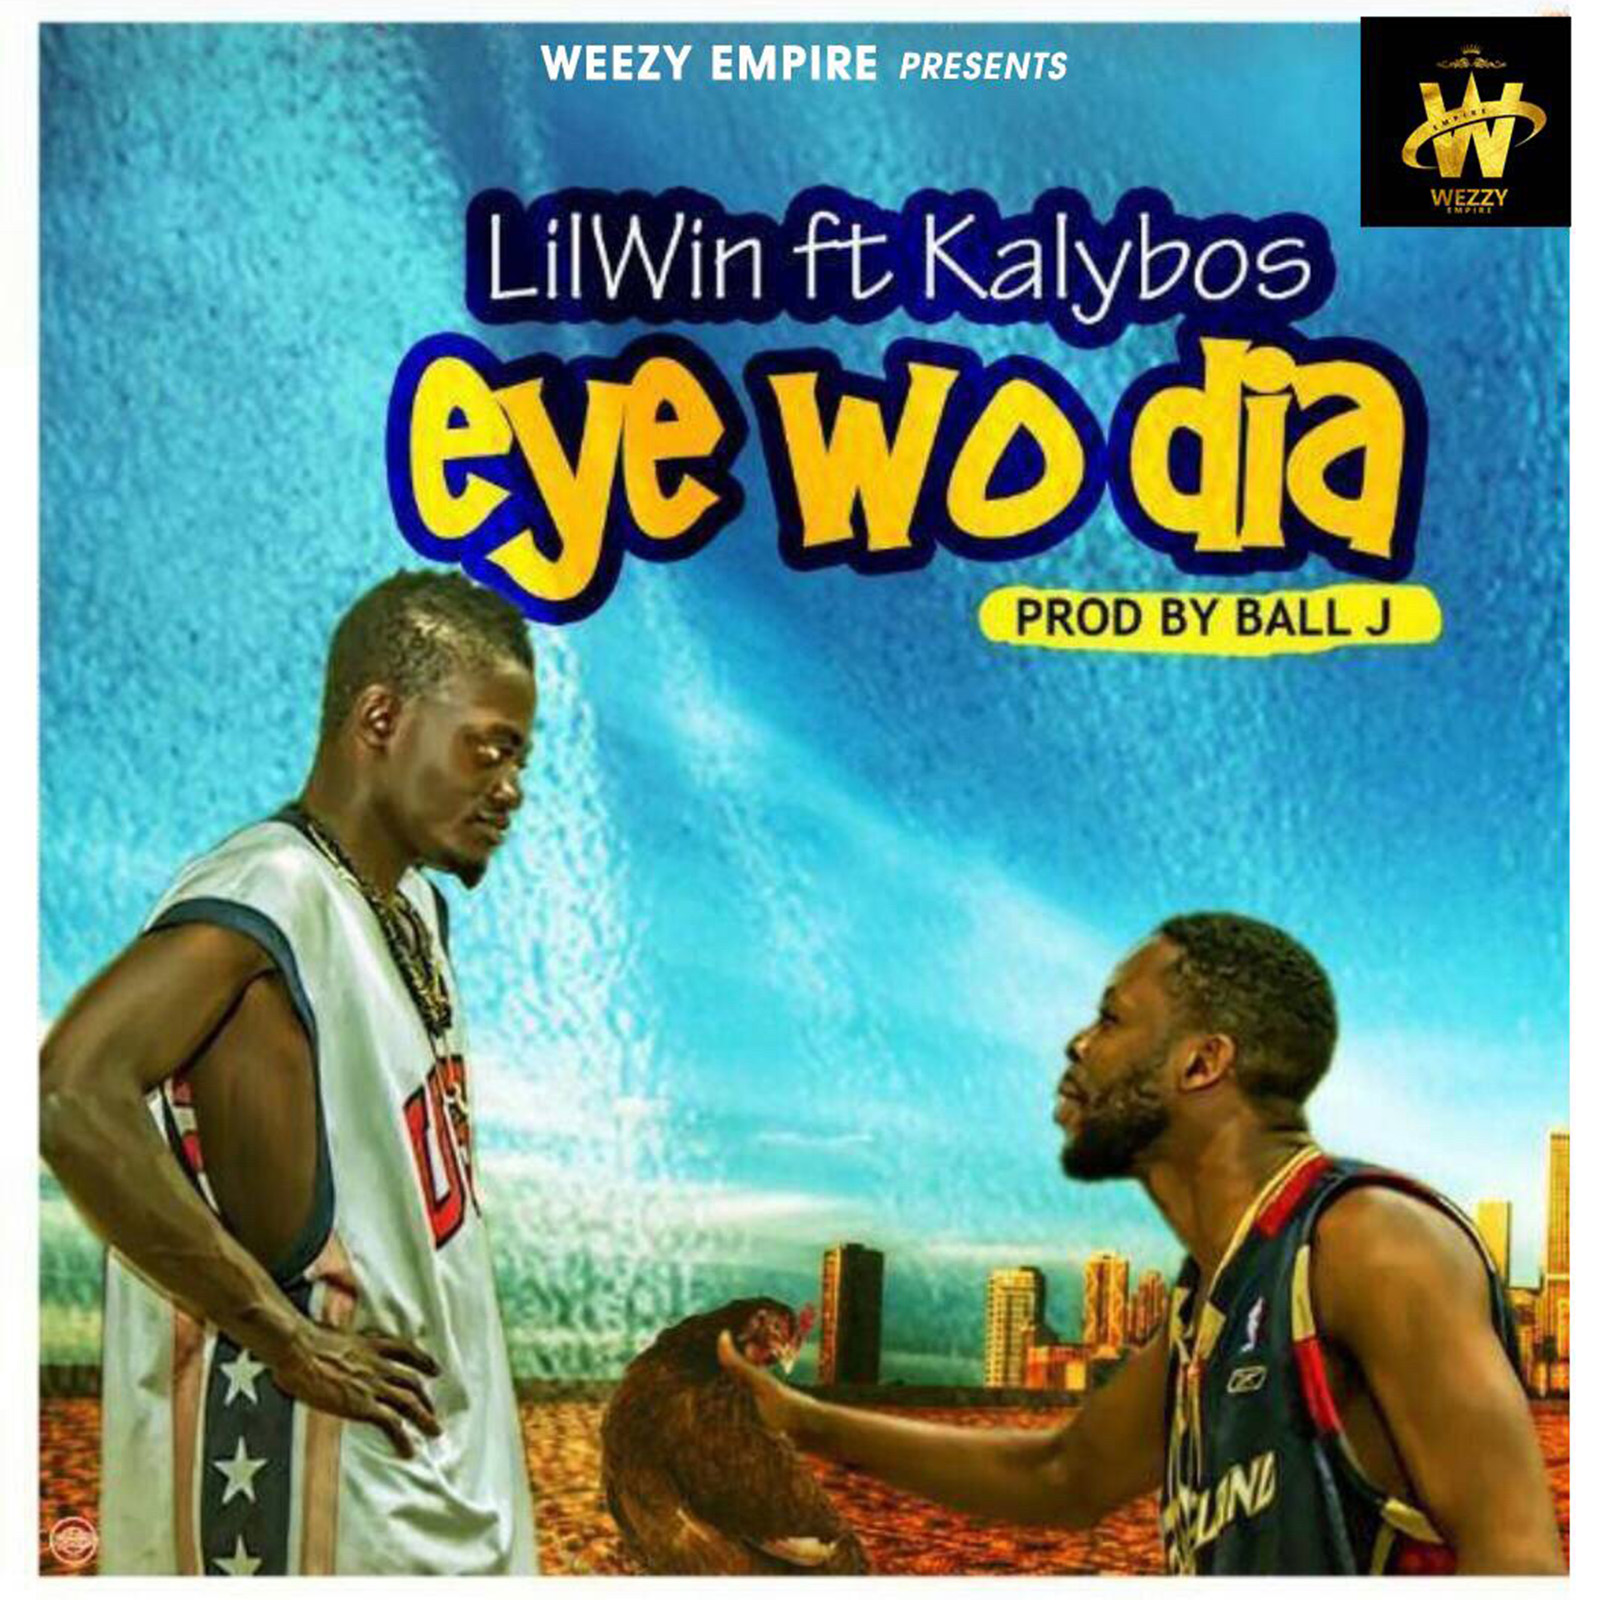 Eye Wo Dia by Lil Win feat. Kalybos